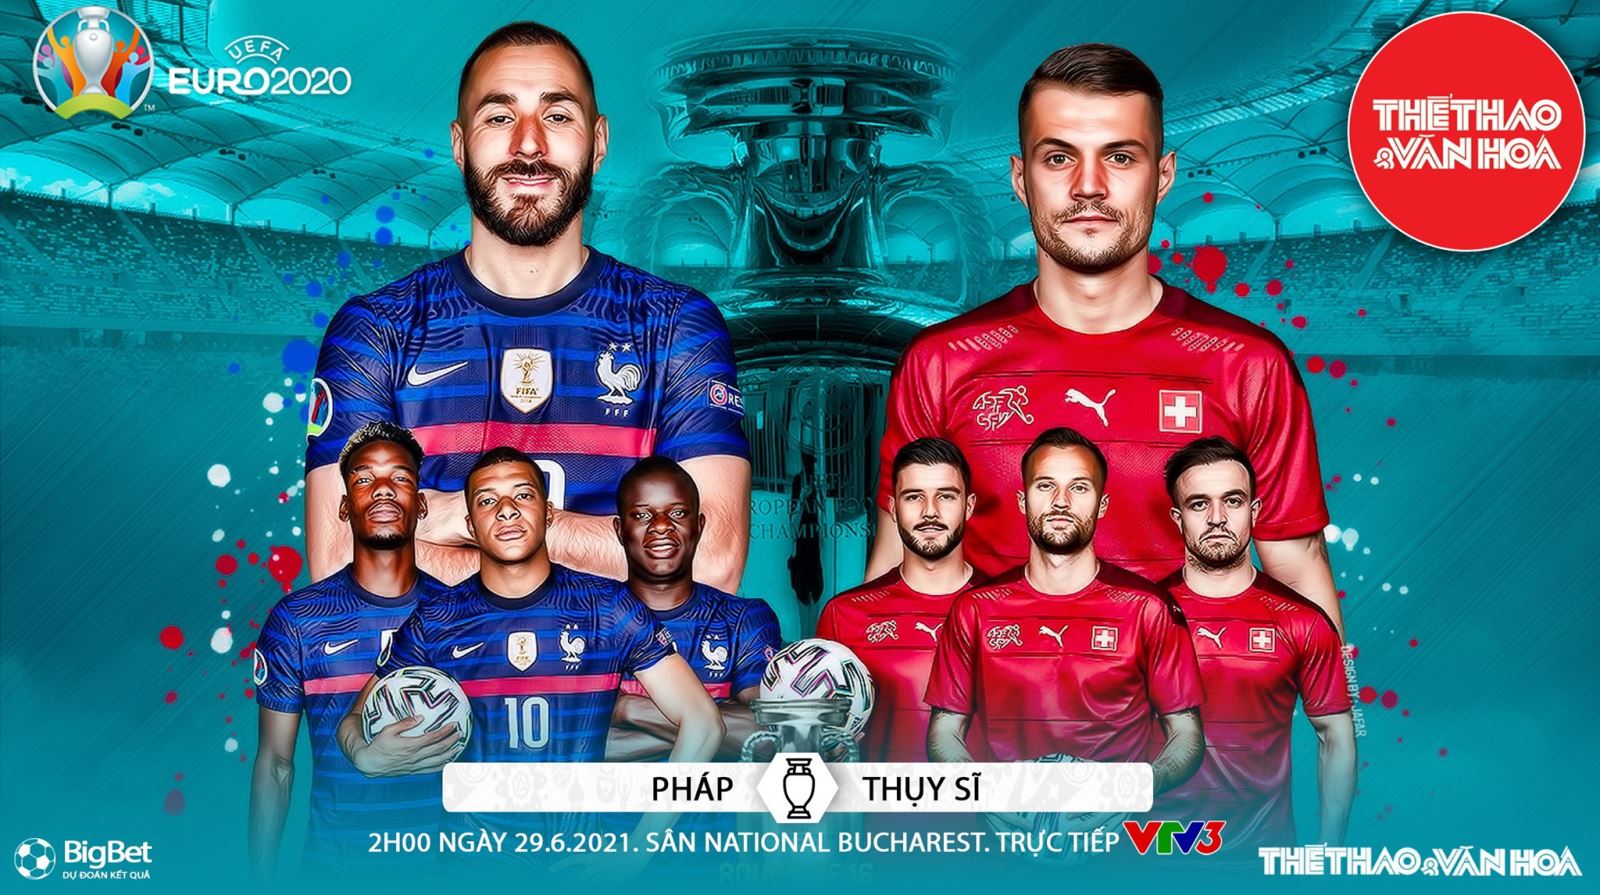 Nhận định kết quả. Nhận định bóng đá Pháp vs Thụy Sỹ. VTV6 VTV3 trực tiếp bóng đá EURO 2021